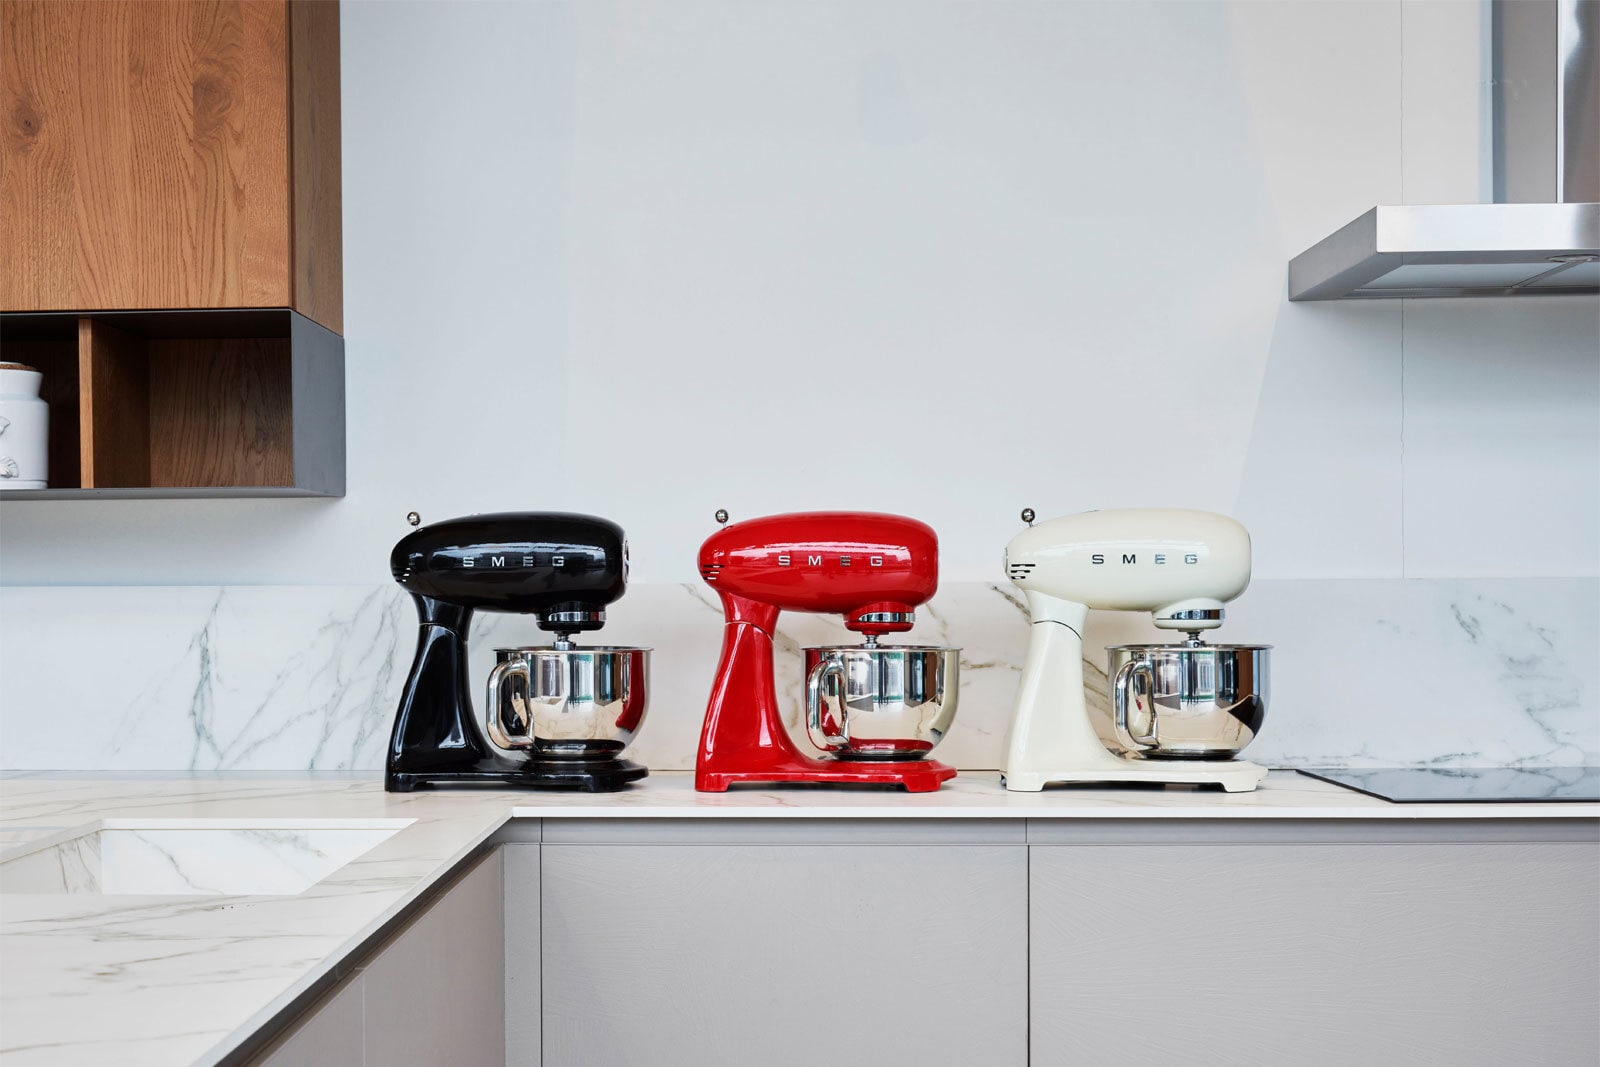 SMEG Küchenmaschine Full-Color rot/ silberfarbig